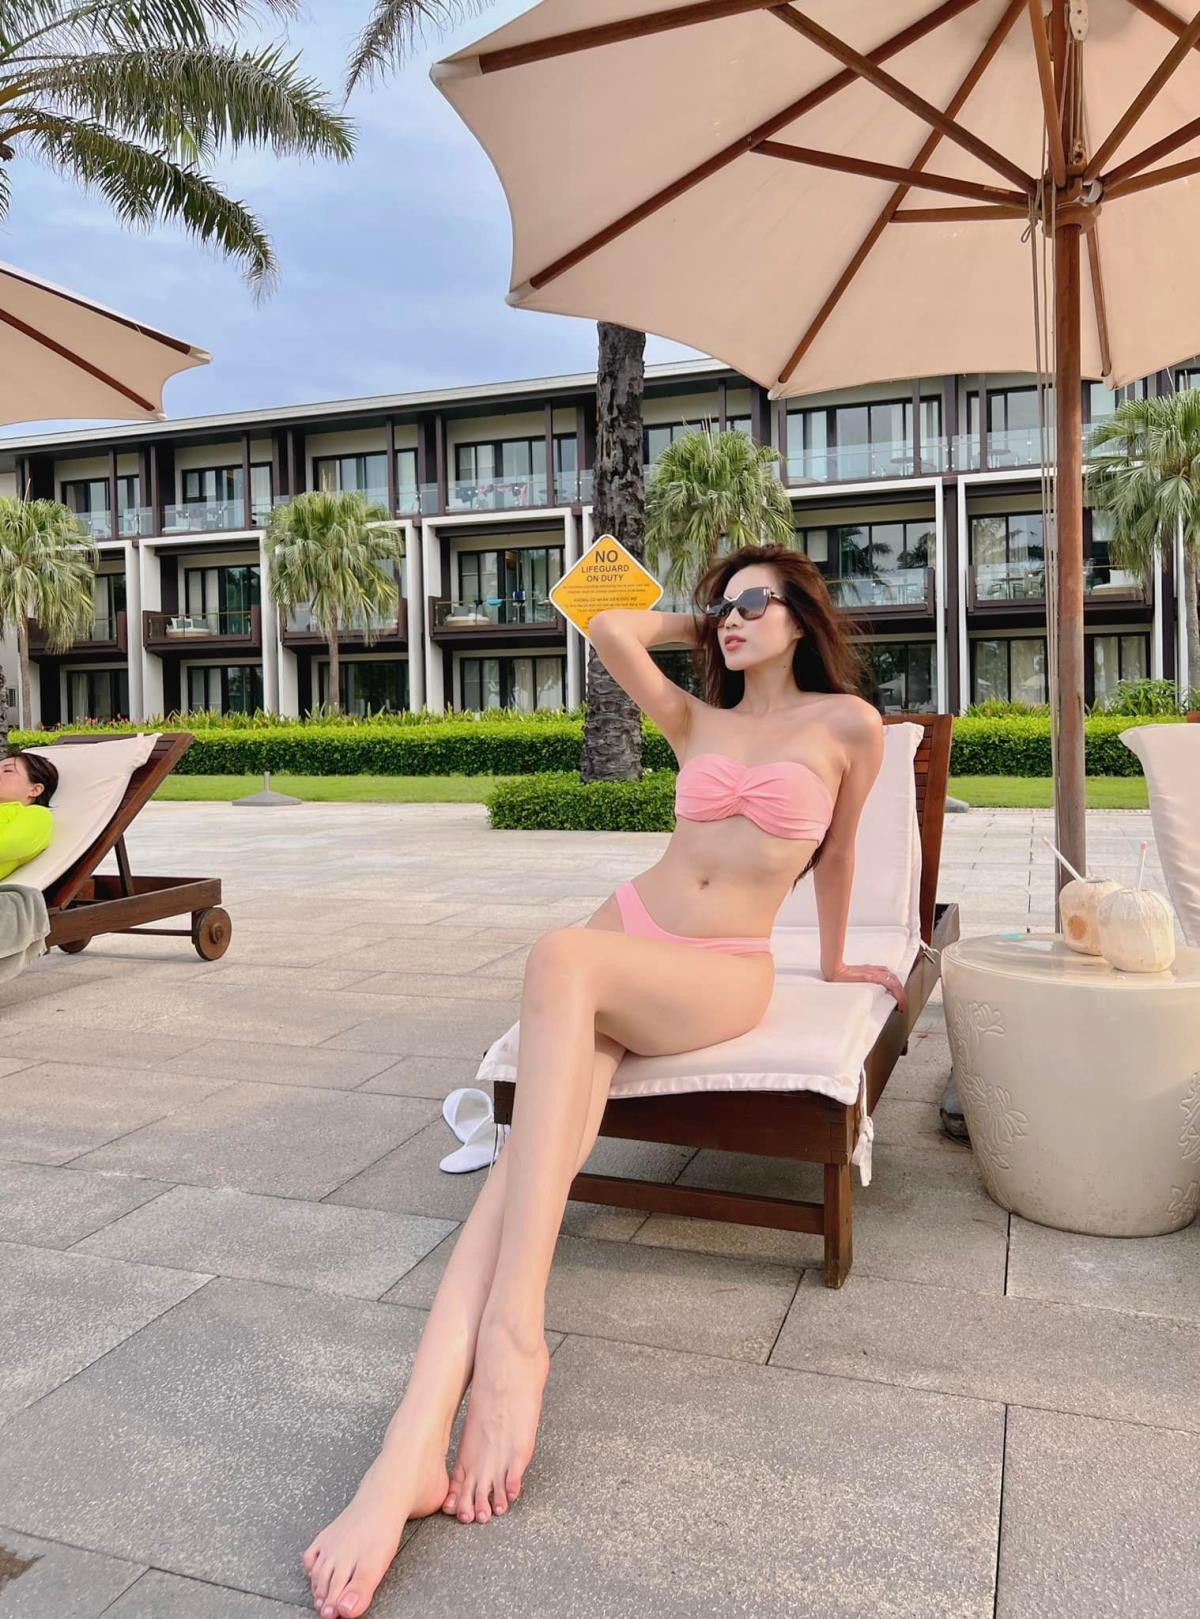 Diện bikini hồng, Hoa hậu Đỗ Thị Hà khoe chân dài miên man - 2